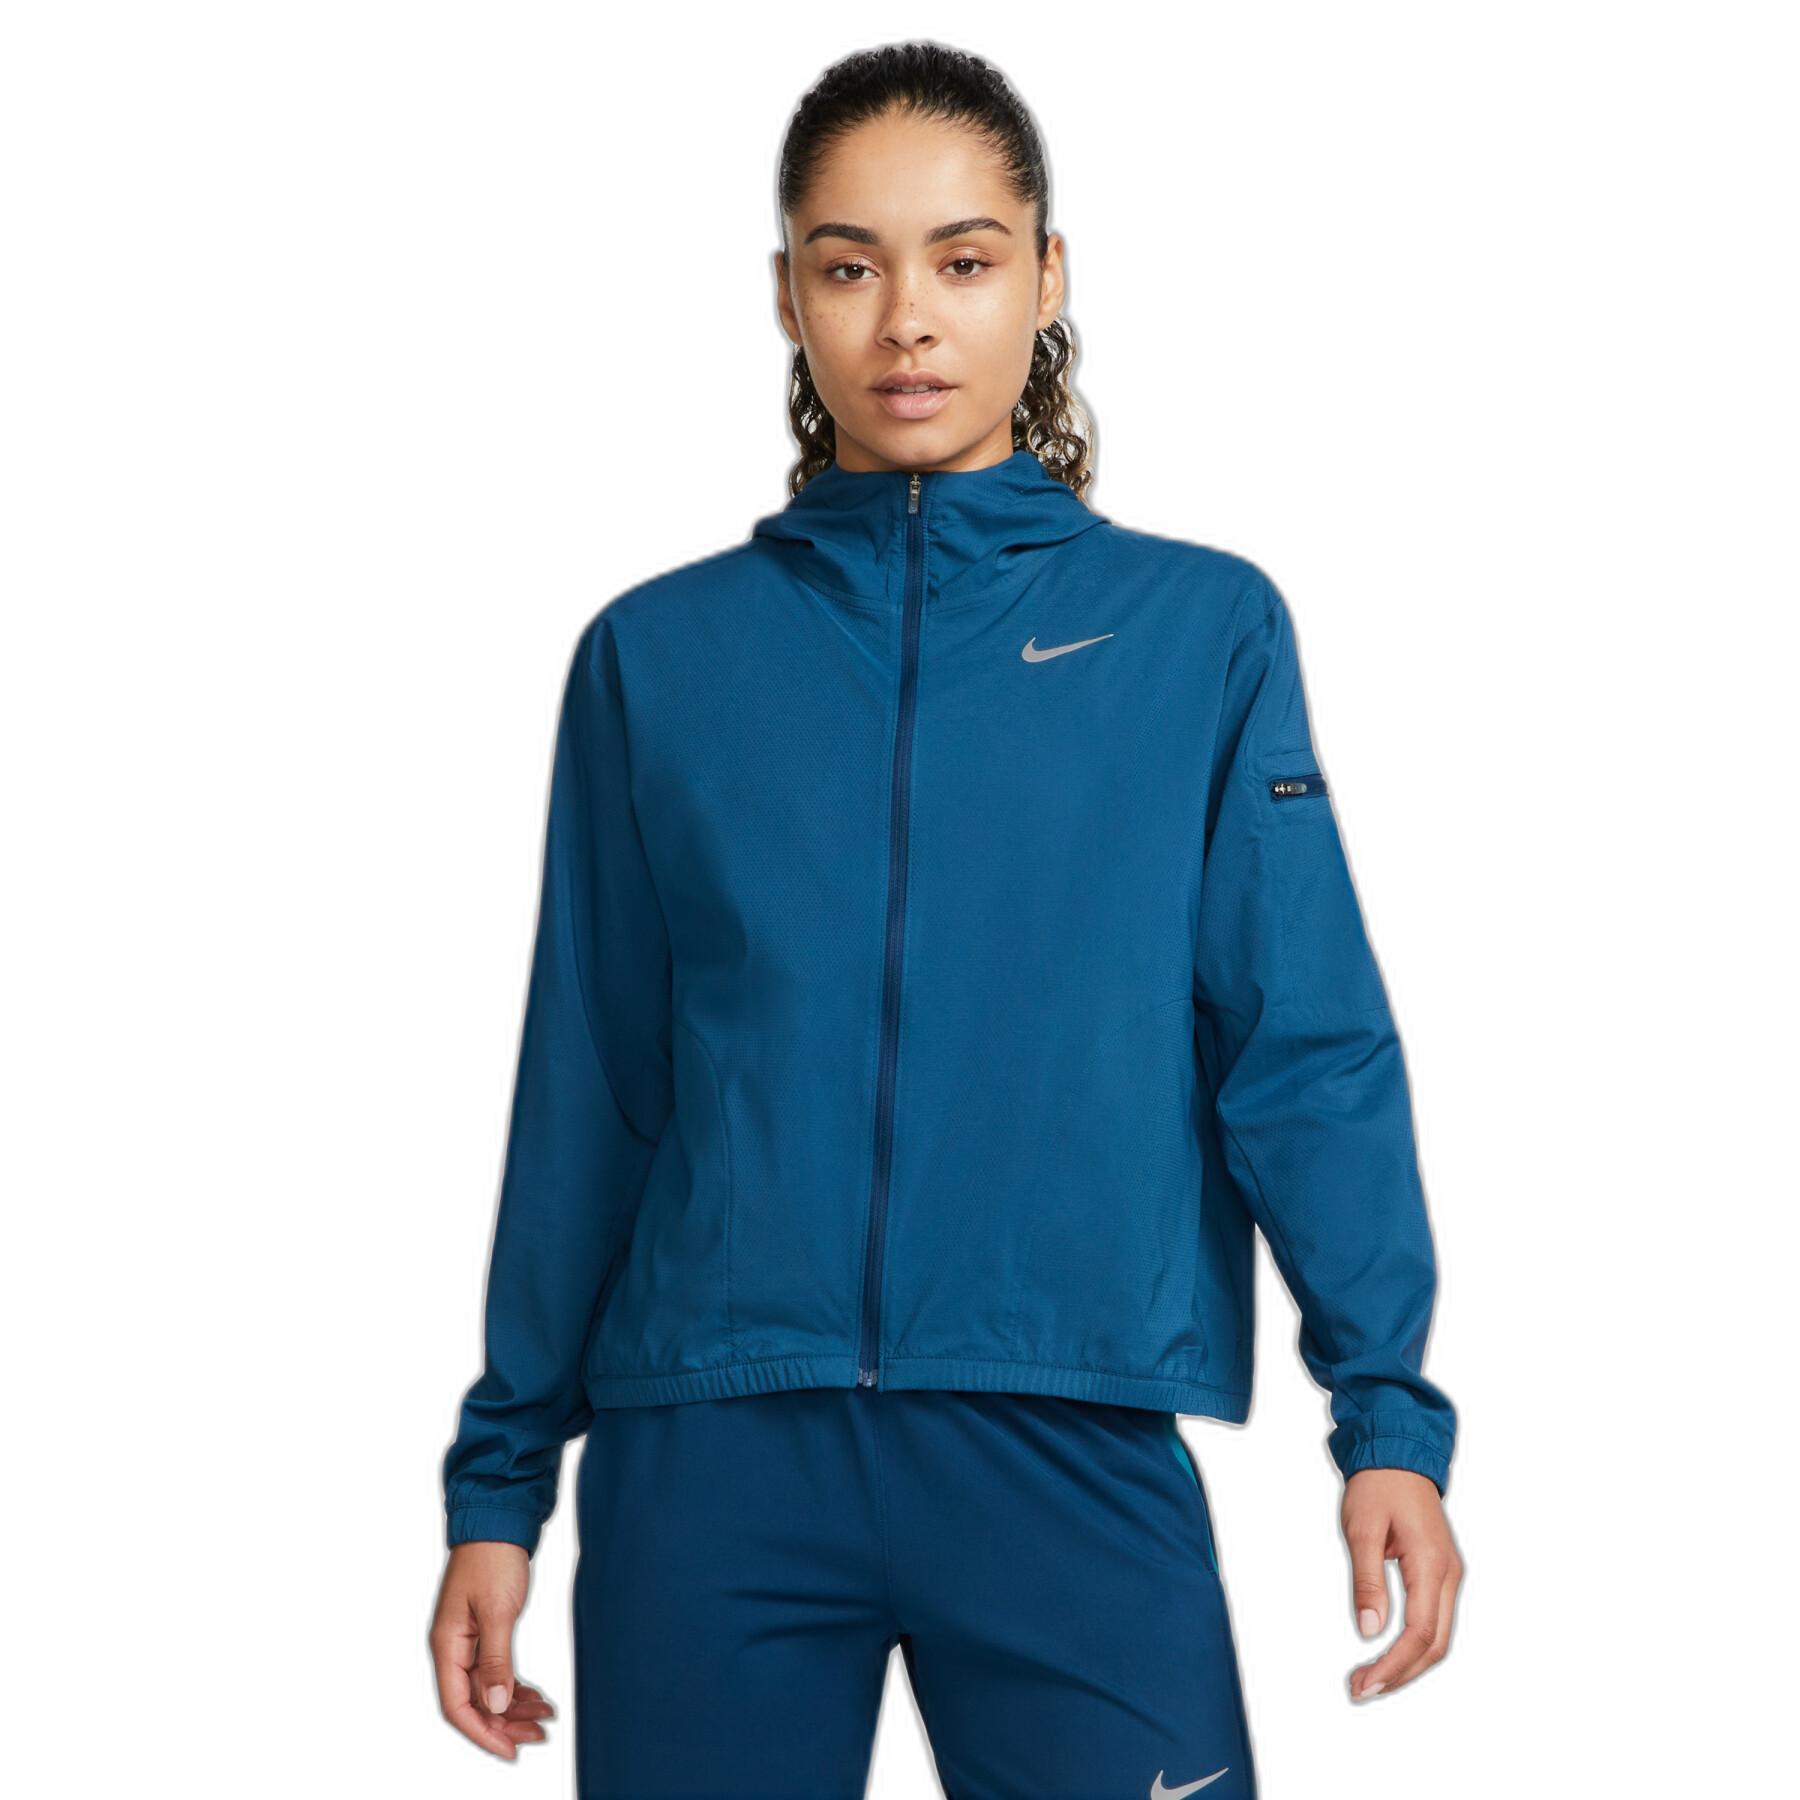 Women's waterproof jacket Nike Impossibly Light